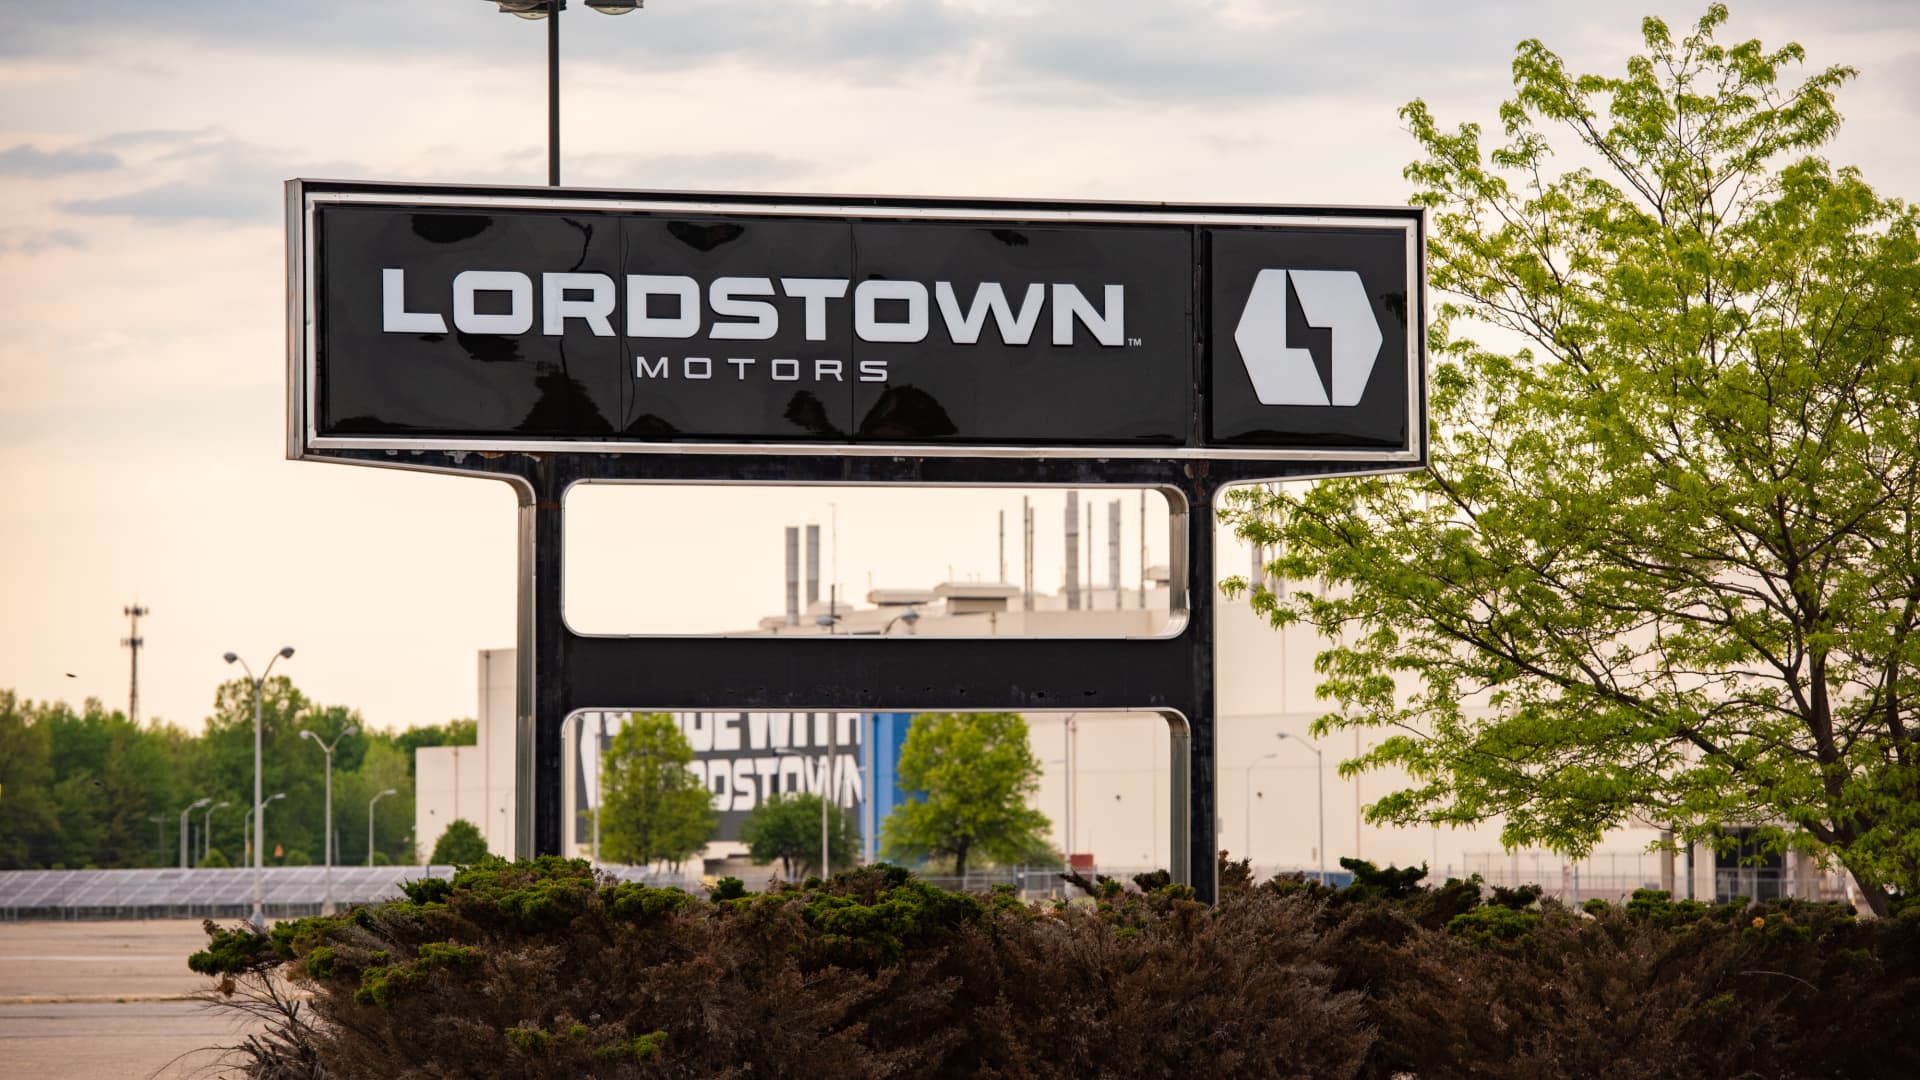 Lordstown Motors delivers just 3 Endurance pickups in 2022, begins pivot to new Foxconn EV platform